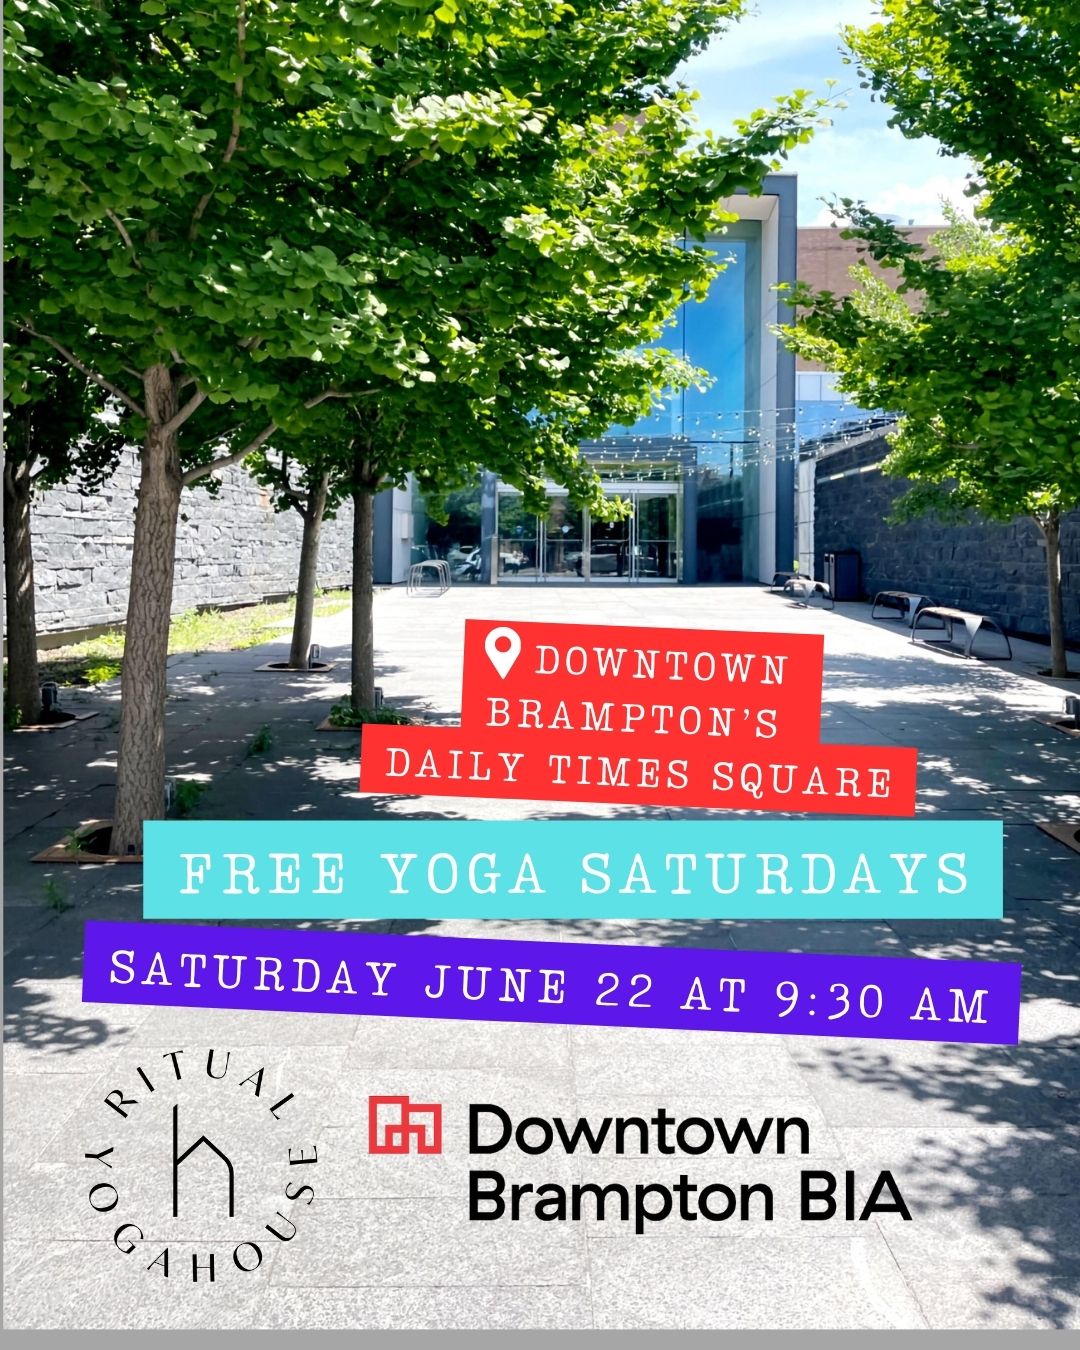 FREE YOGA! Saturday June 22 at 9:30 AM